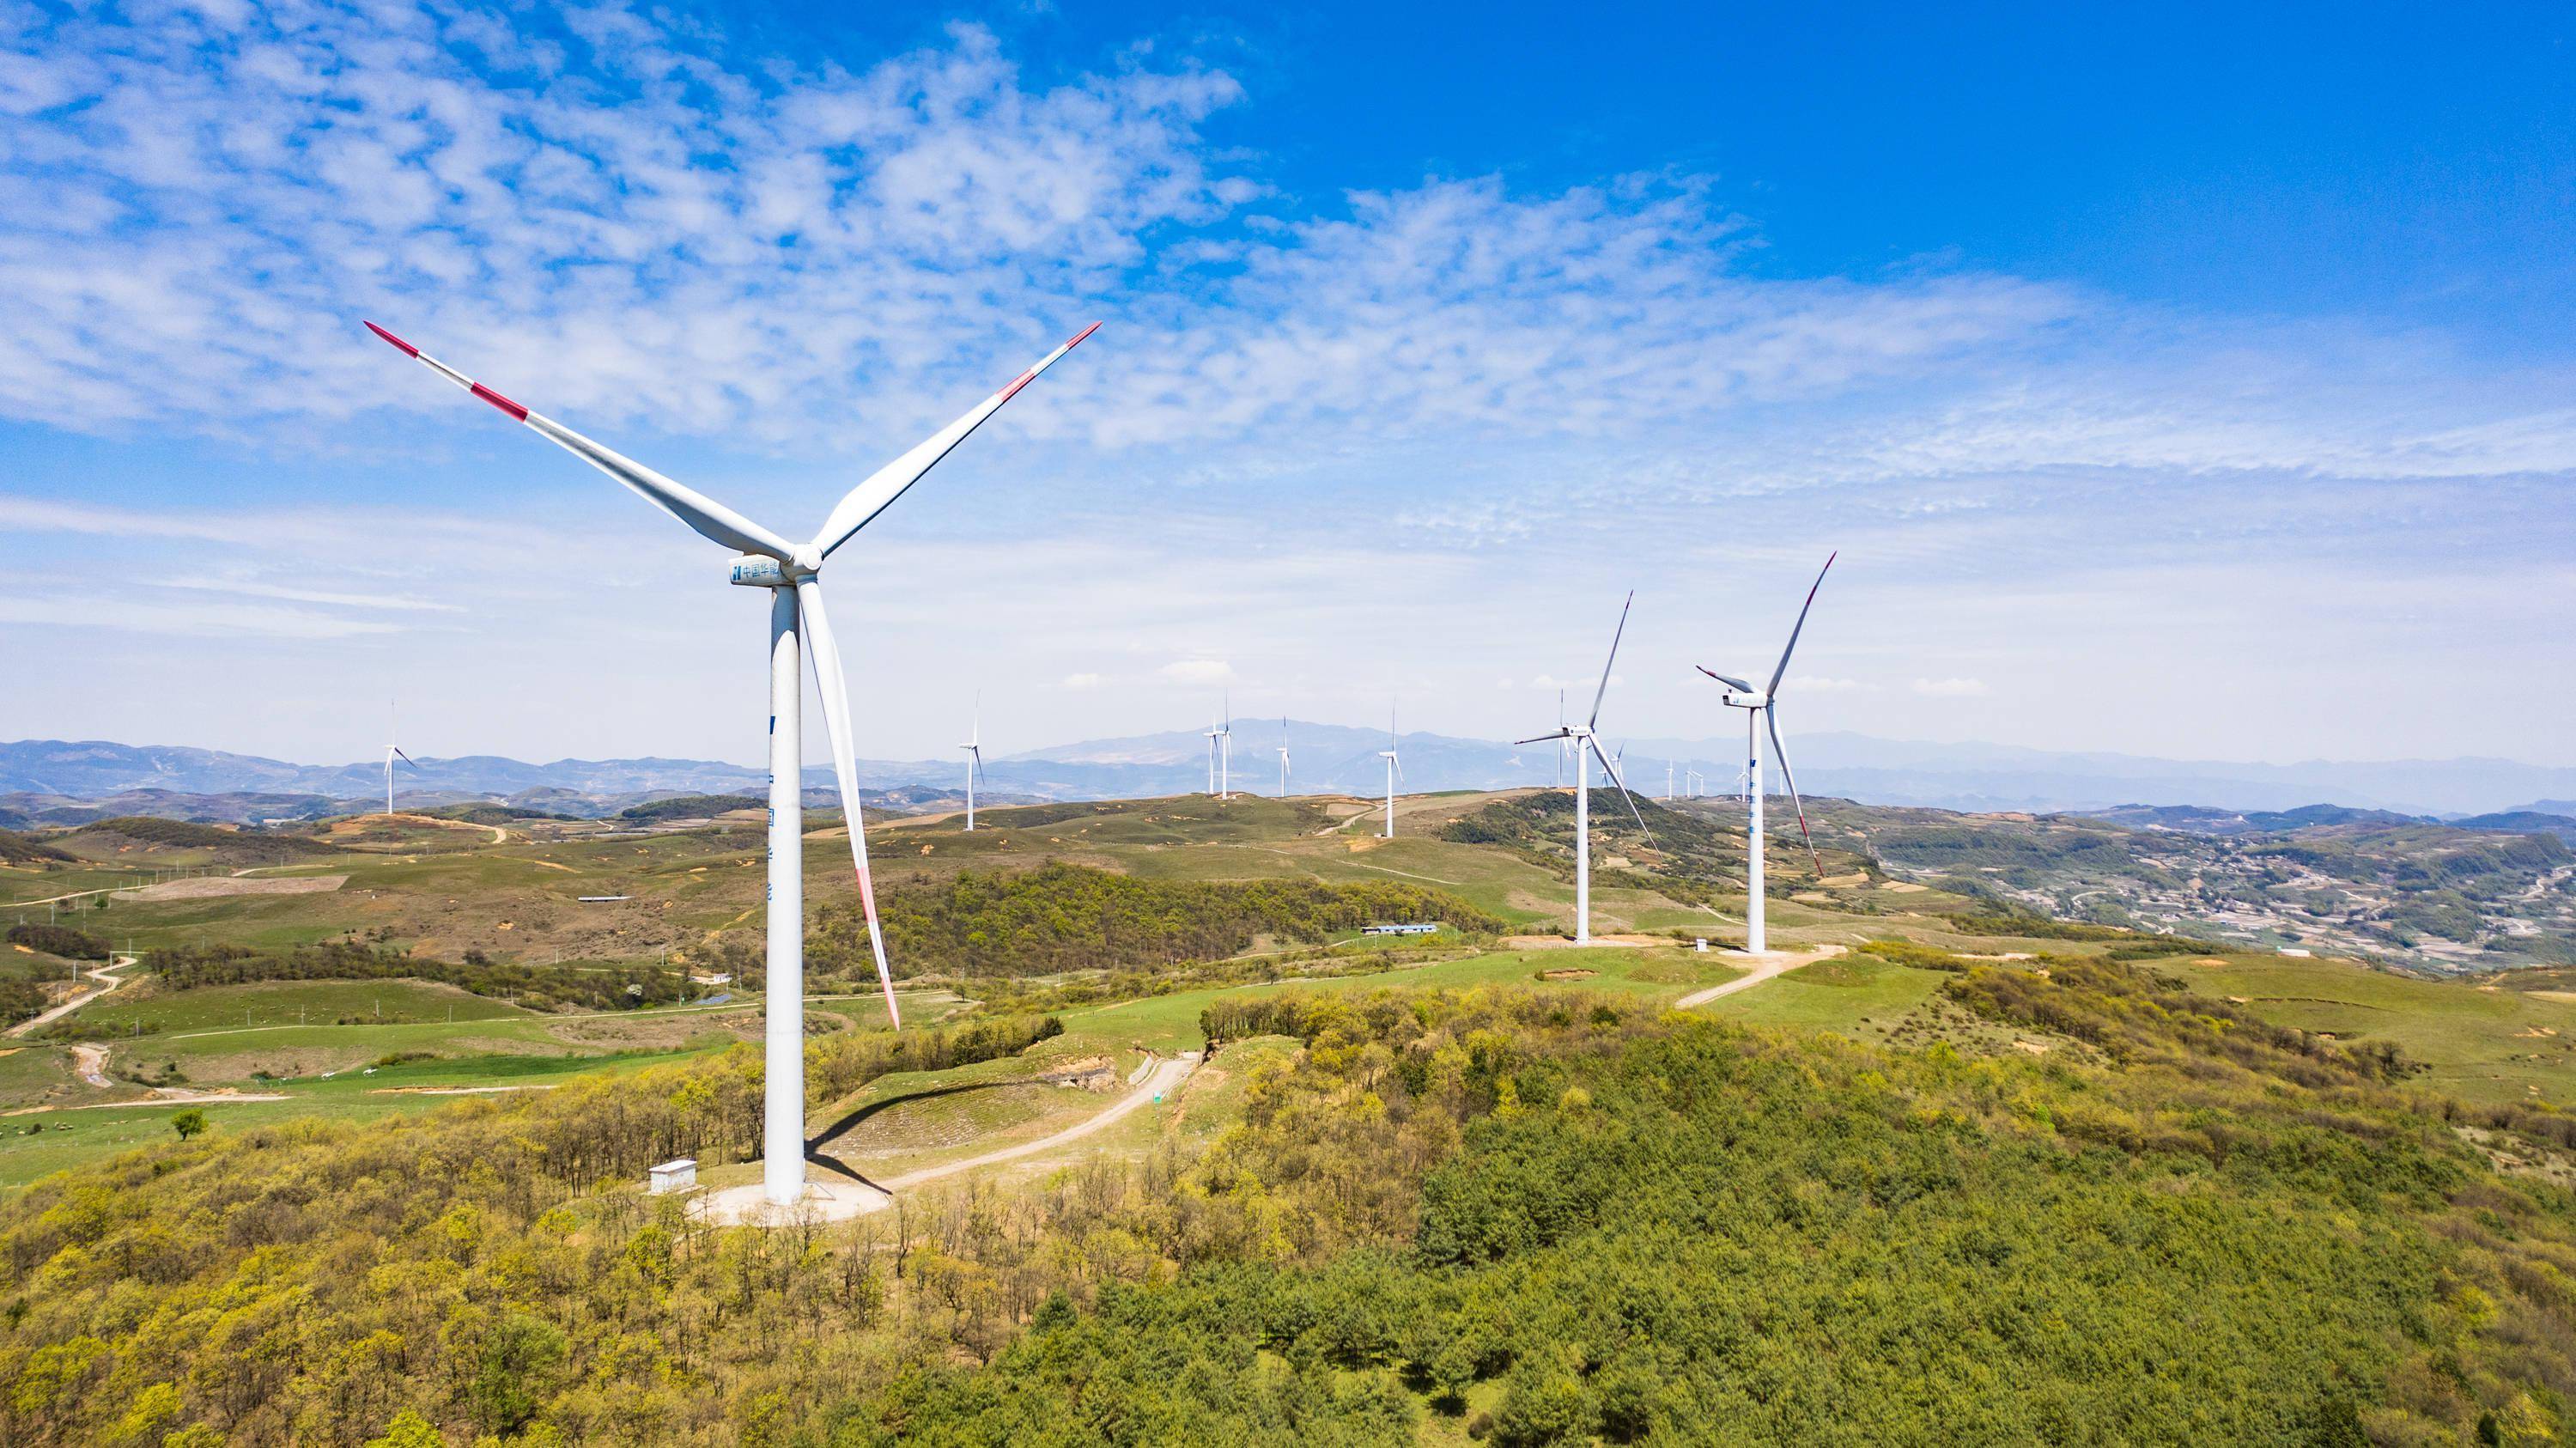 贵州省威宁彝族回族苗族自治县雪山镇的风力发电设备(2020年4月27日摄